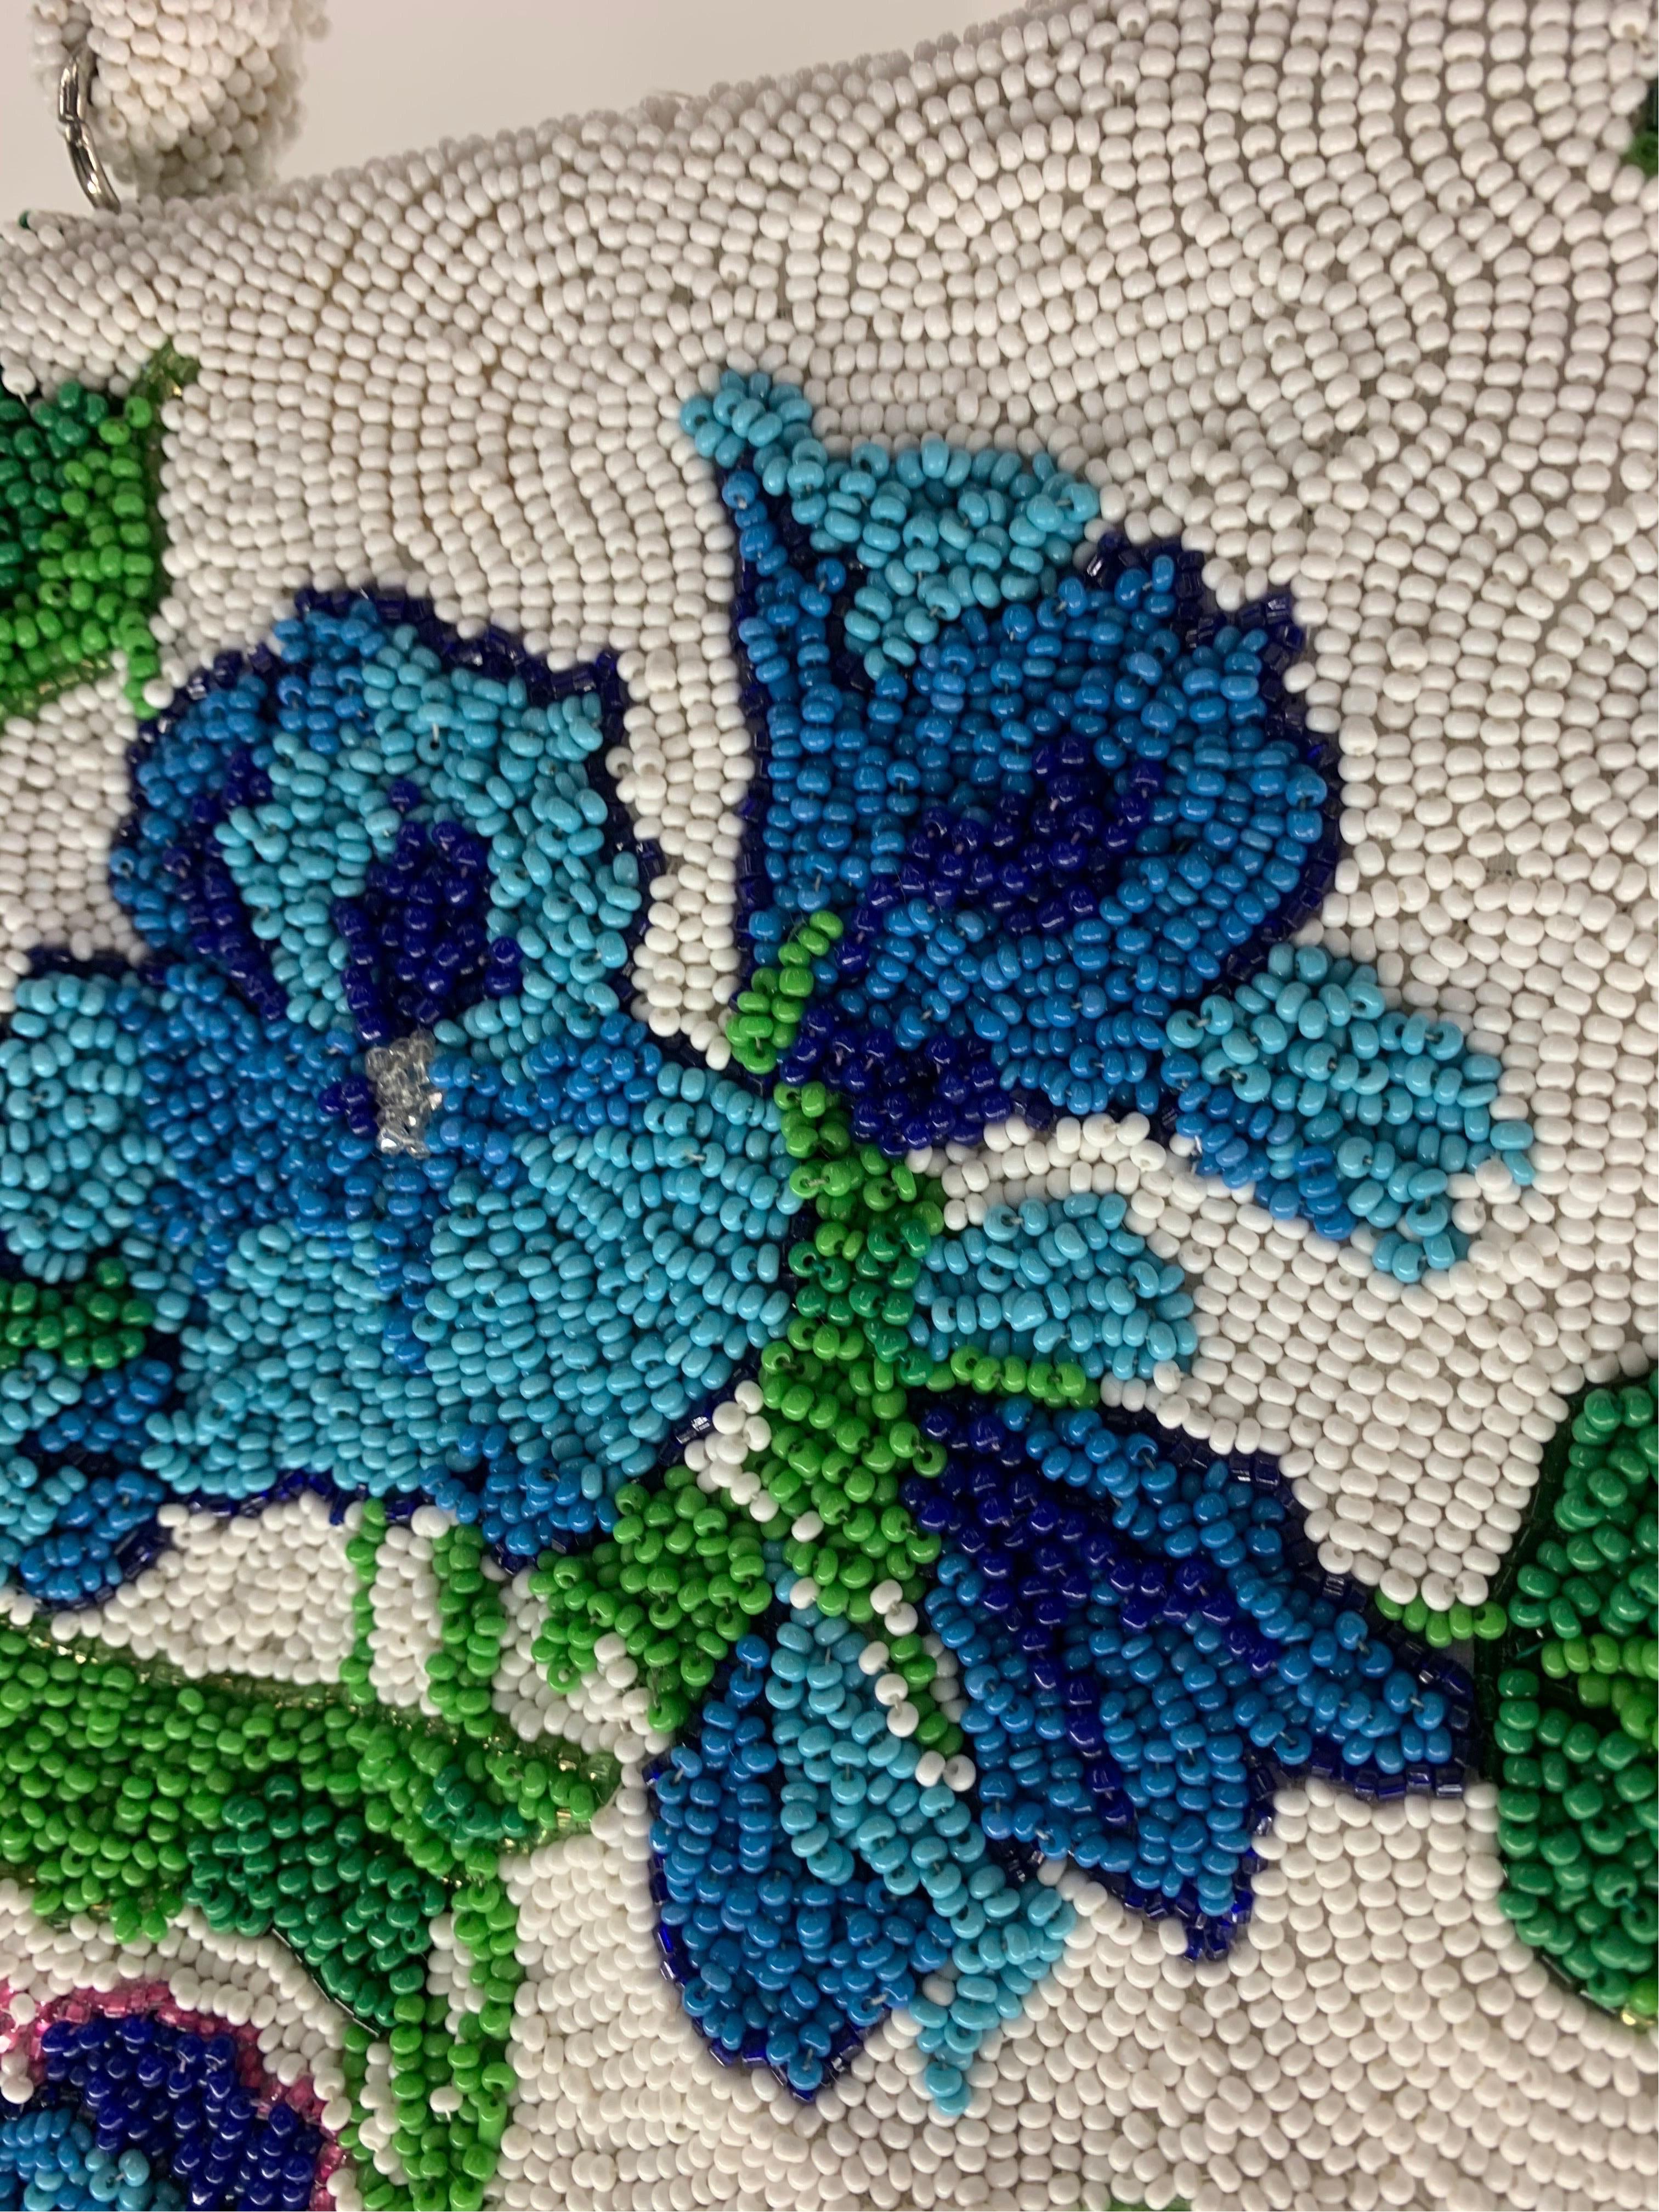 1950 Koret Tresor Stunning Floral Beaded Handbag In Green & Blue On White Ground For Sale 3